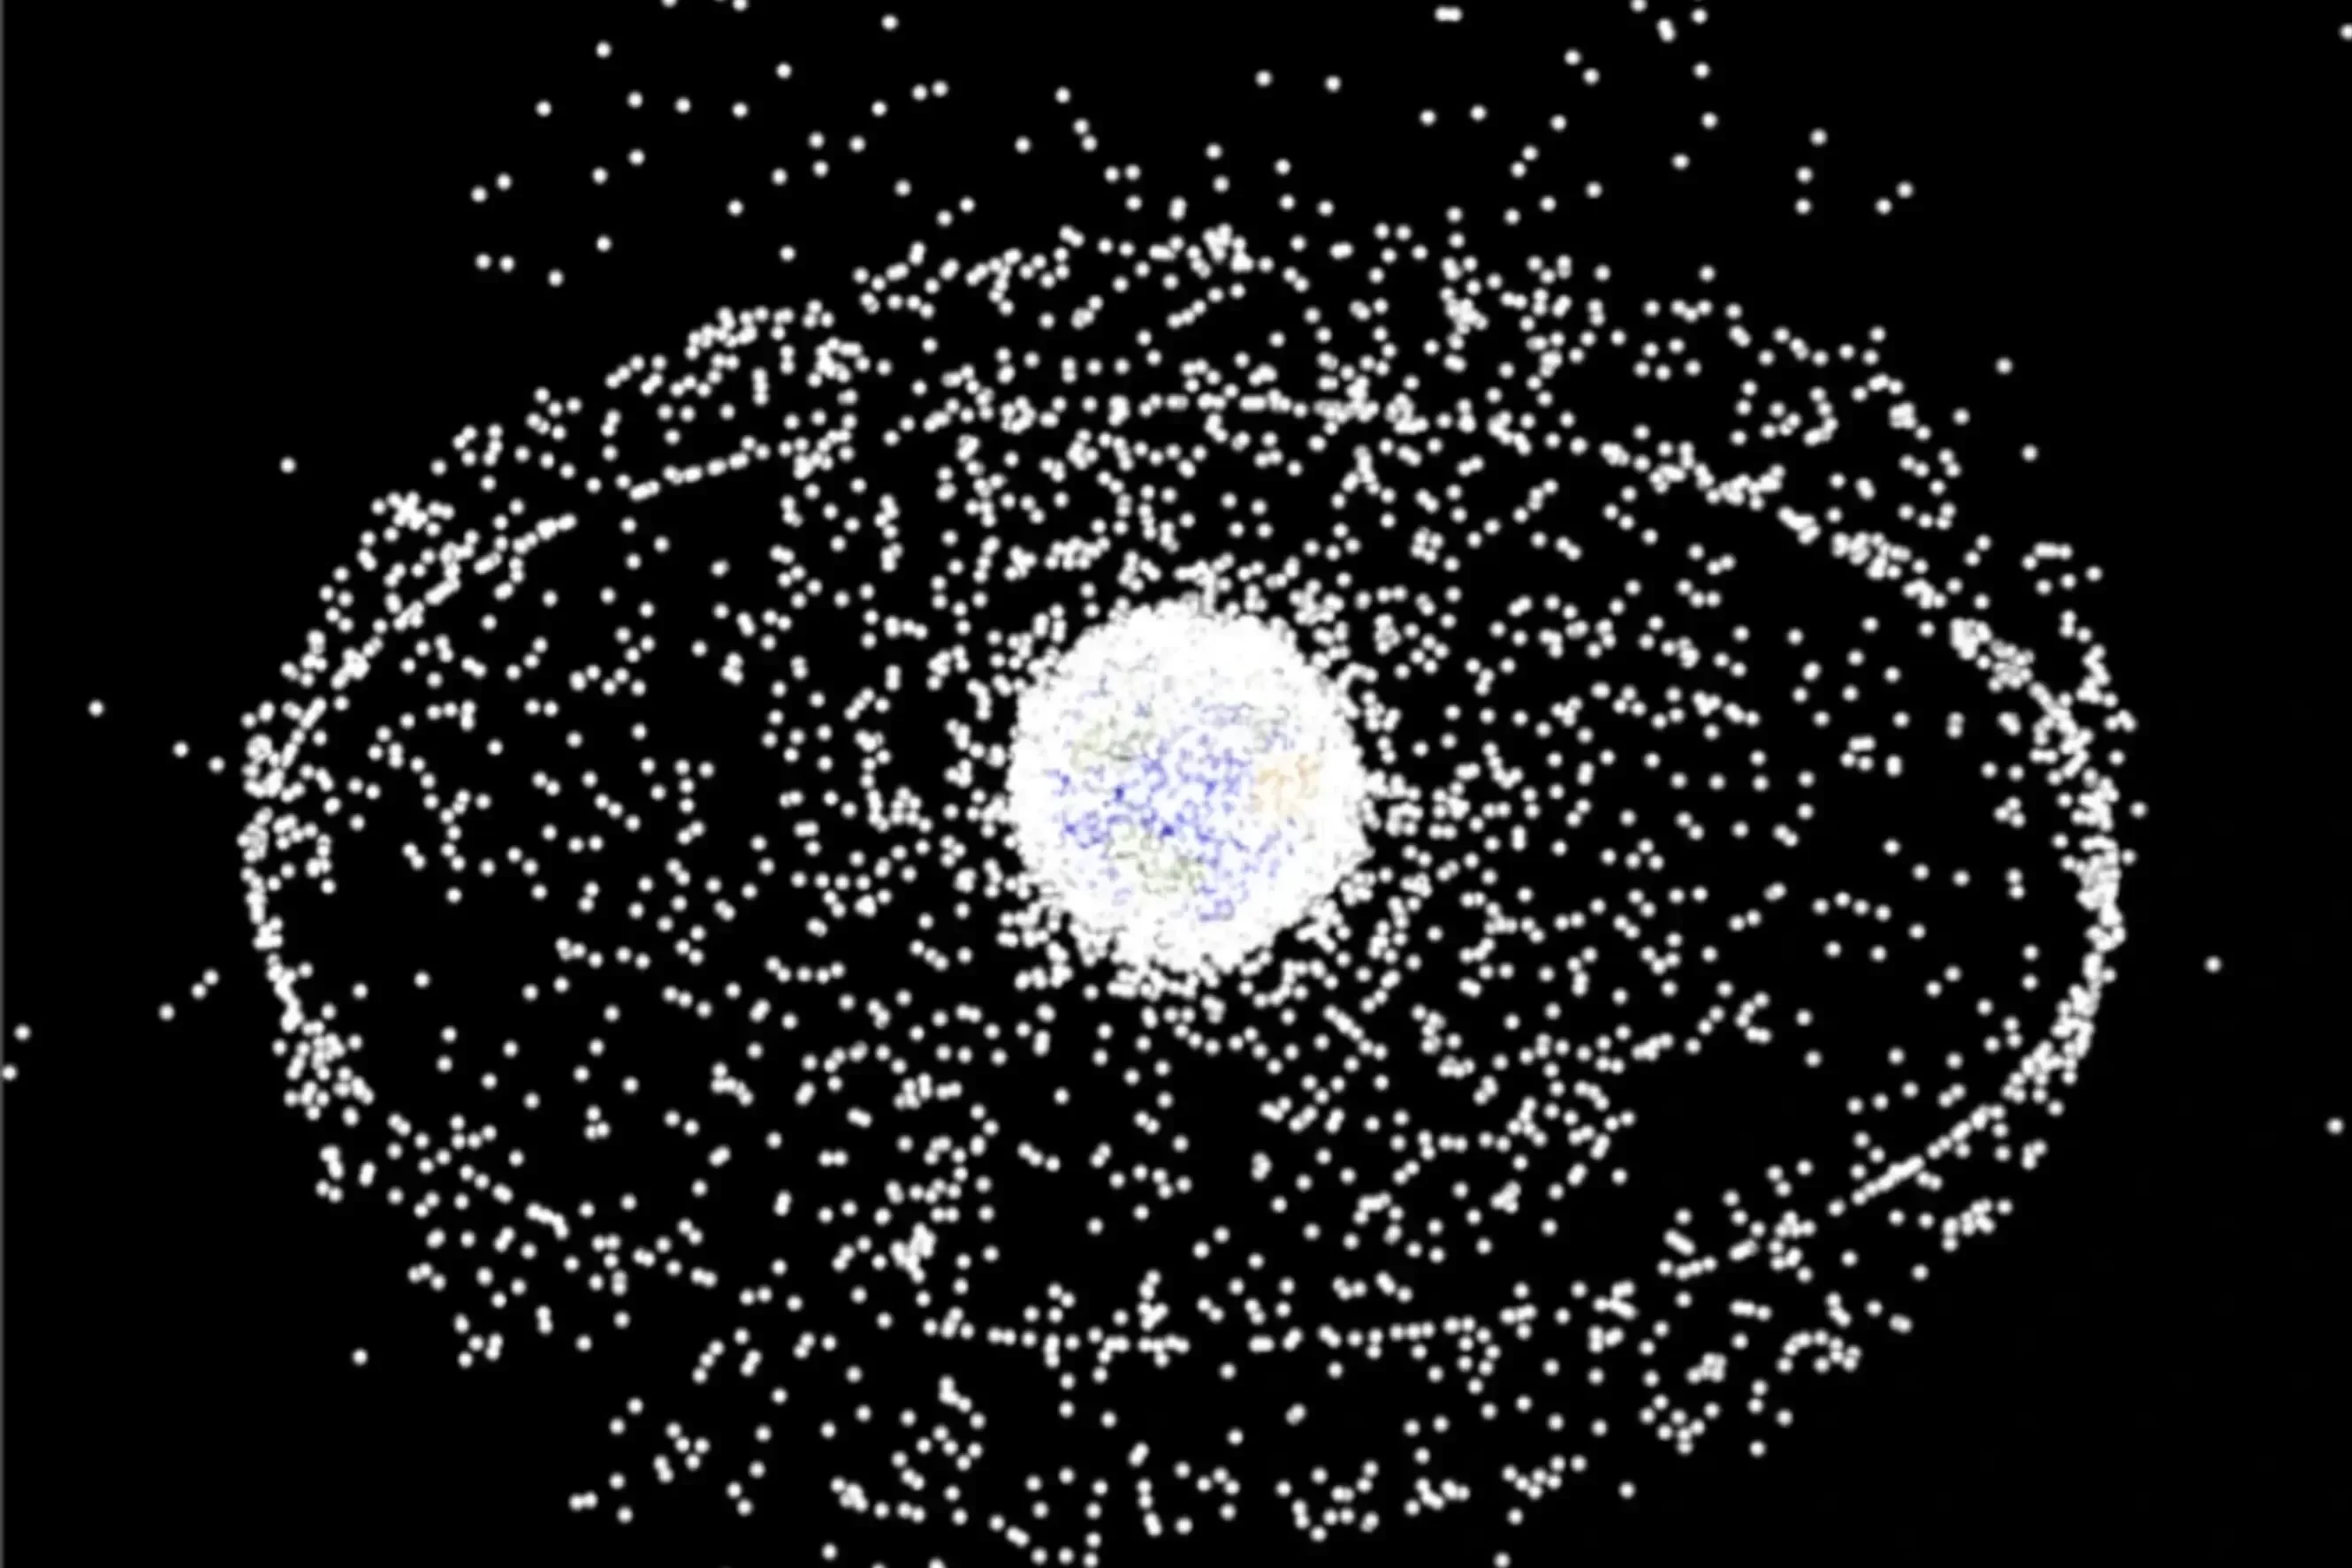 Représentation des satellites et débris en 2010